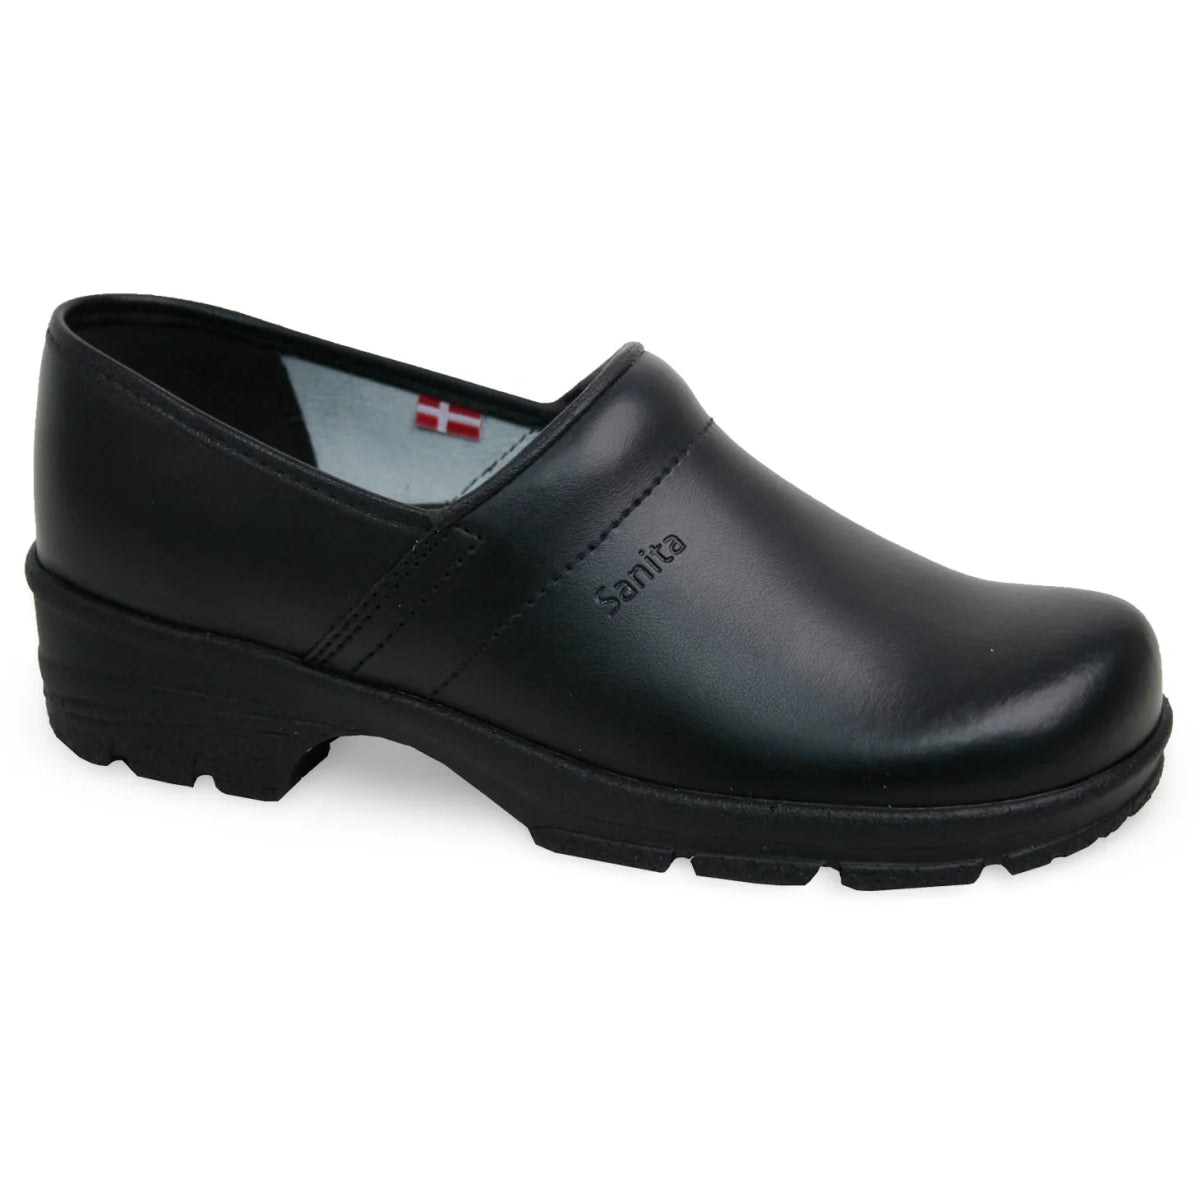 SANITA DAVID CLOG UNISEX IN BLACK - TLW Shoes